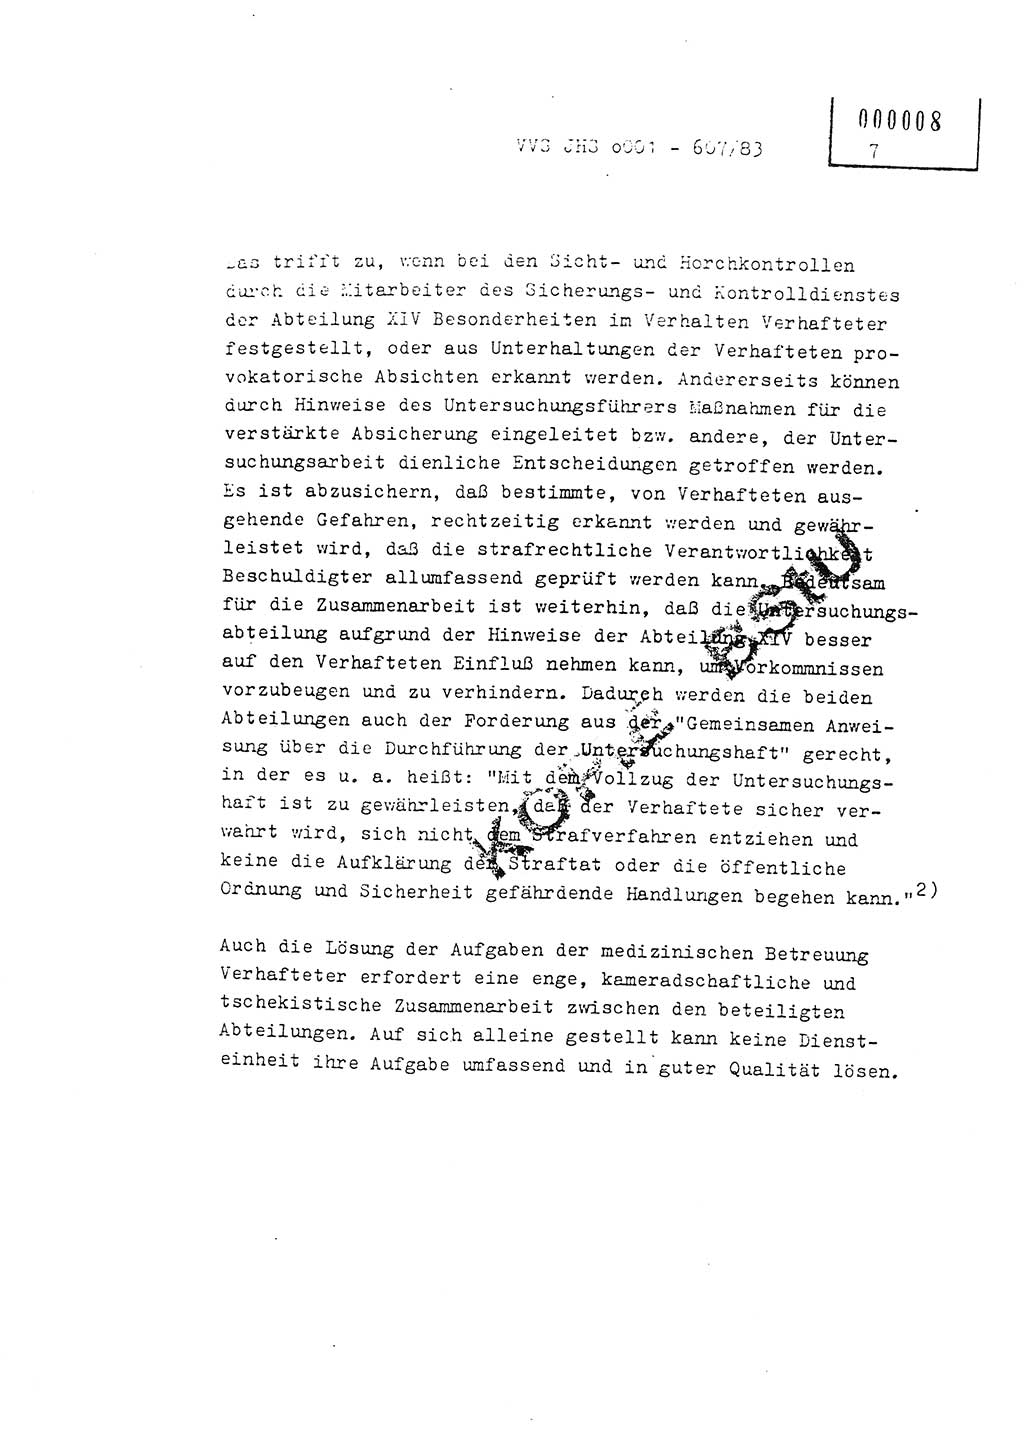 Fachschulabschlußarbeit Oberleutnant Hans-Joachim Saltmann (BV Rostock Abt. ⅩⅣ), Ministerium für Staatssicherheit (MfS) [Deutsche Demokratische Republik (DDR)], Juristische Hochschule (JHS), Vertrauliche Verschlußsache (VVS) o001-607/83, Potsdam 1983, Seite 7 (FS-Abschl.-Arb. MfS DDR JHS VVS o001-607/83 1983, S. 7)